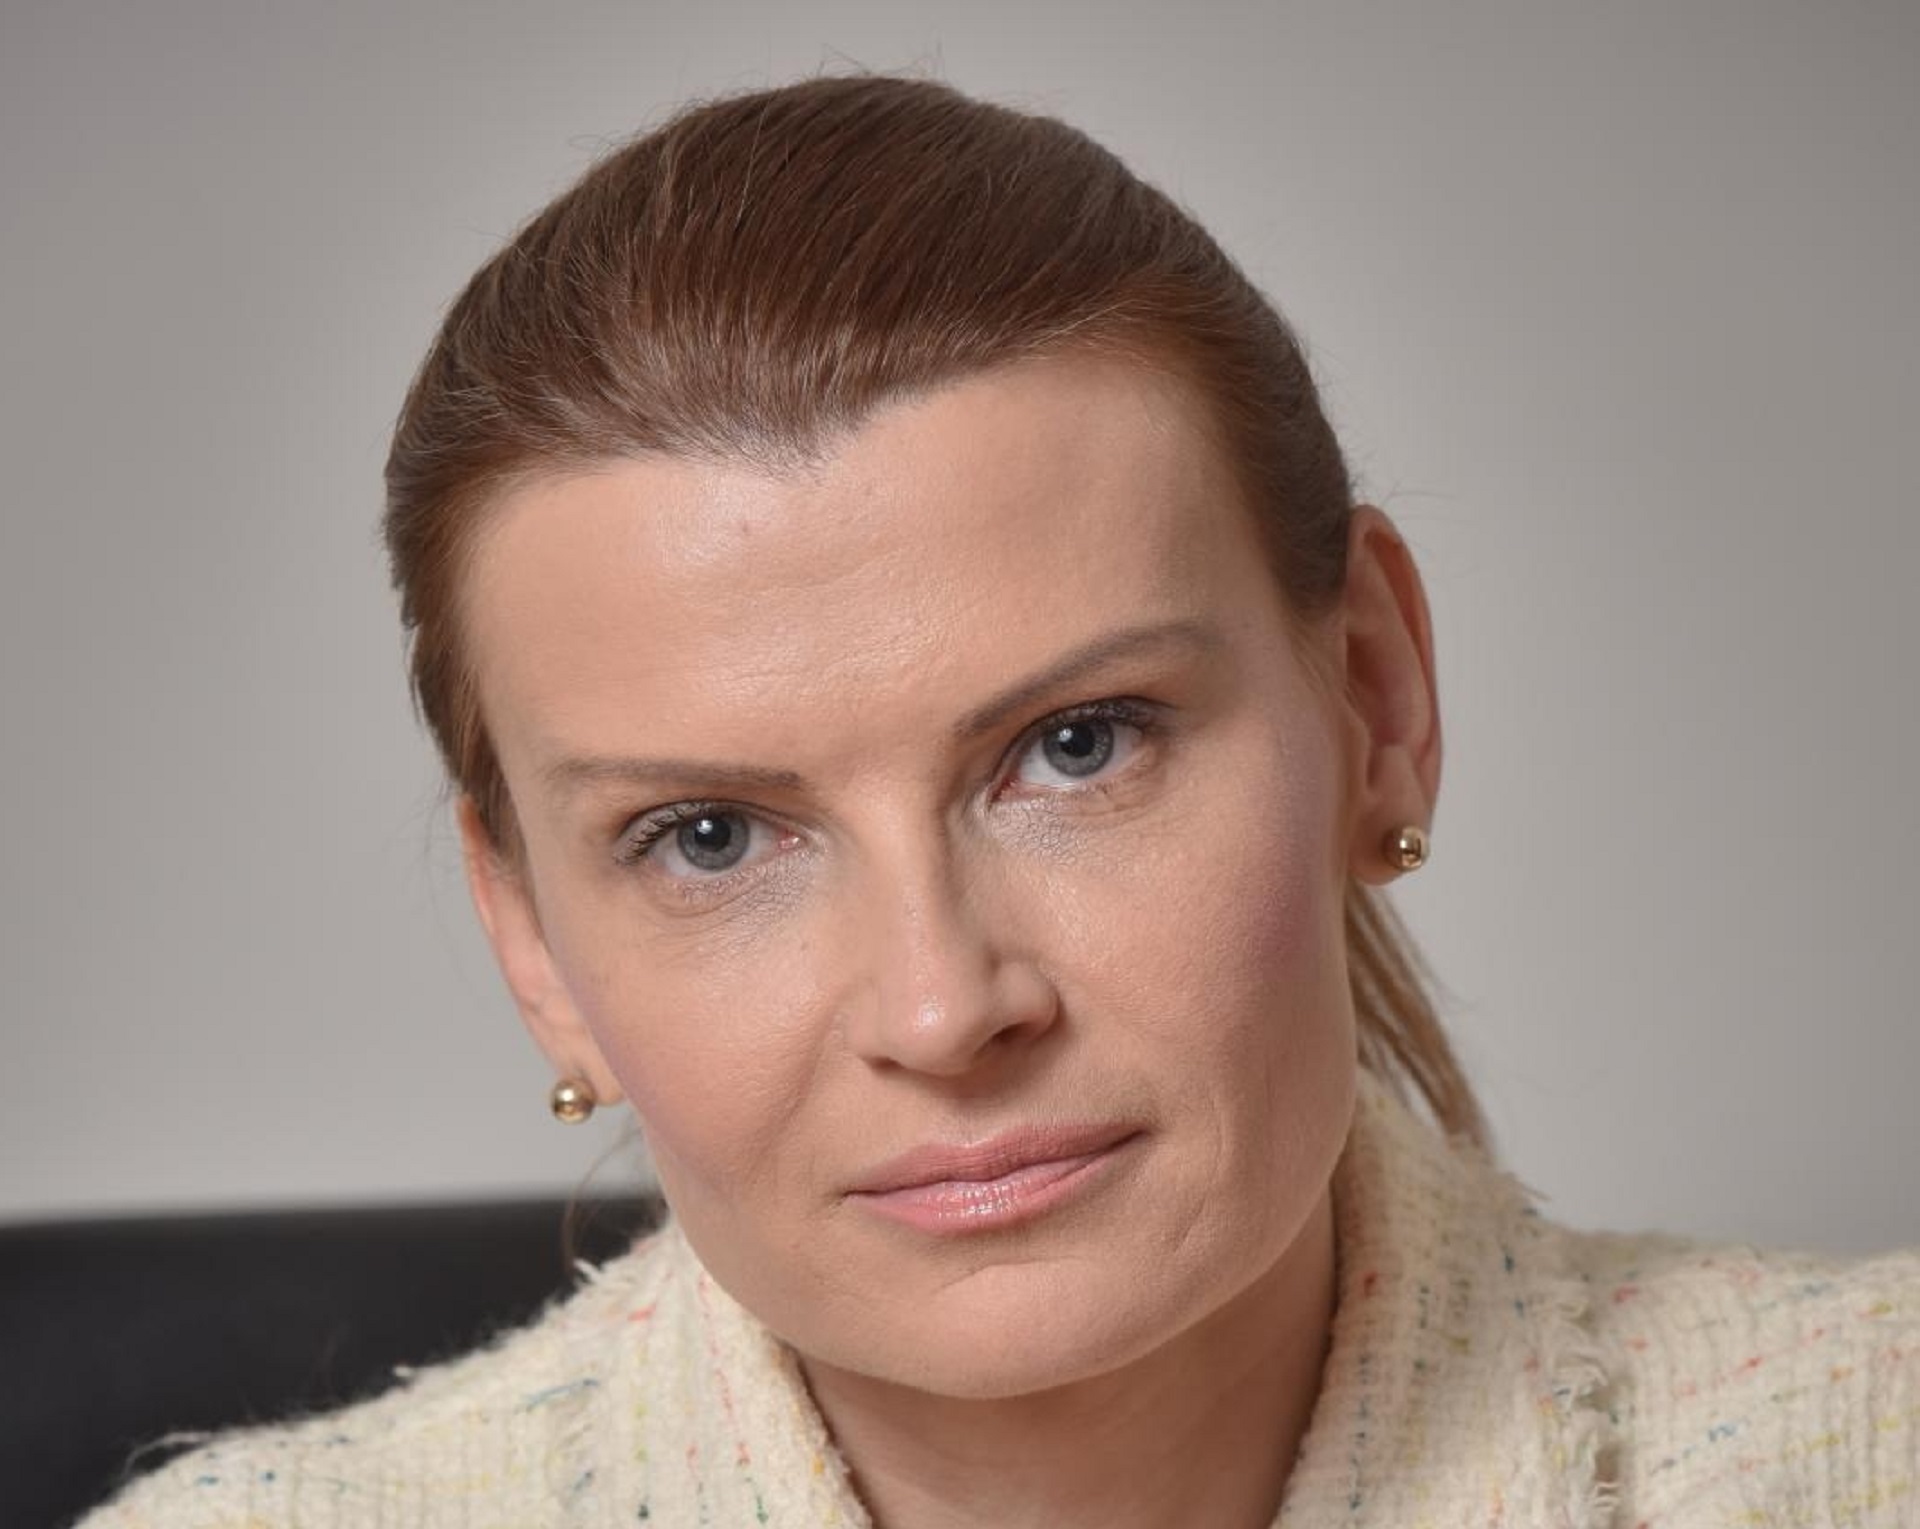 22.02.2017., Zadar - Sabina Glasovac, kandidatkinja SDP-a za gradonacelnicu Zadra. 
Photo: Dino Stanin/PIXSELL